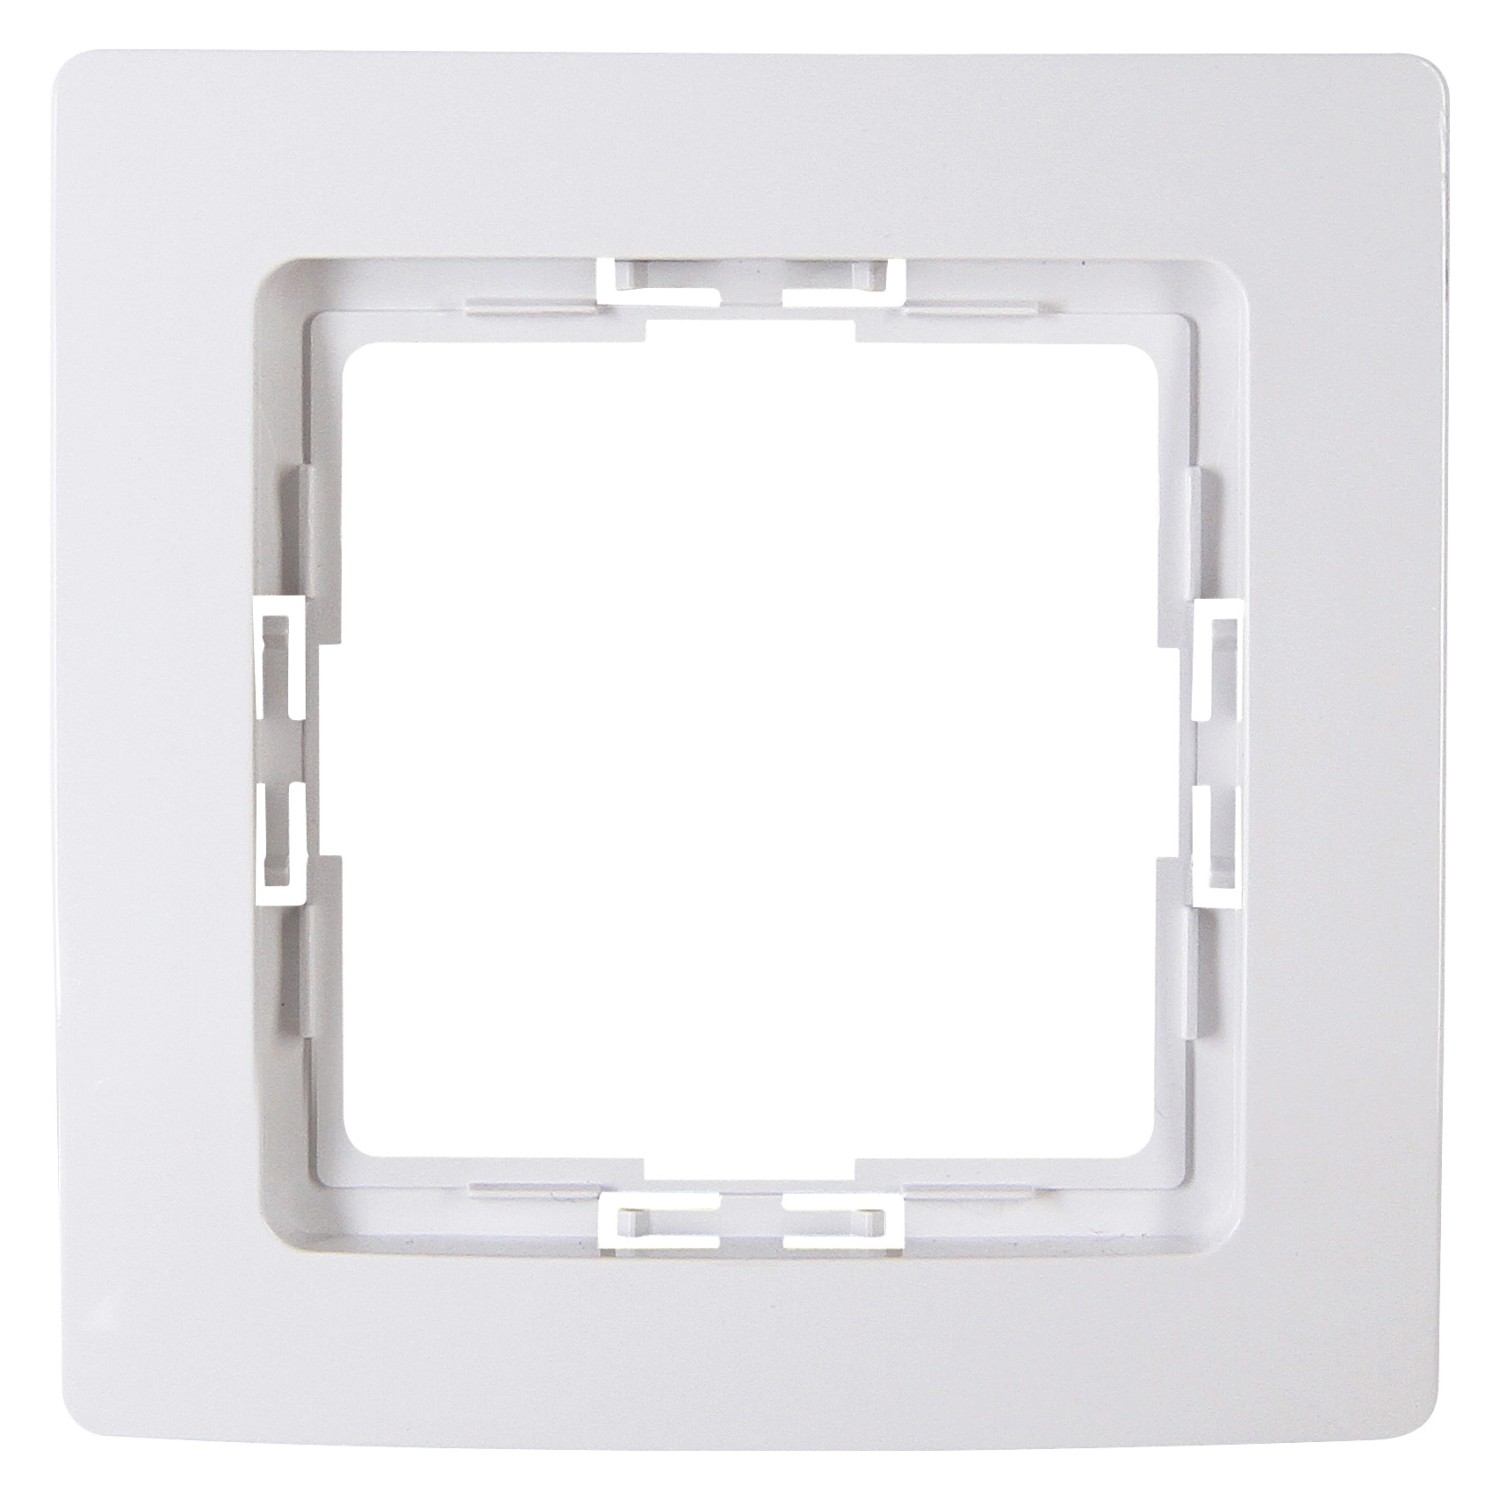 Doppel-Lichtschalter mit Kontrollleuchte grau mit Glas-Abdeckrahmen weiß